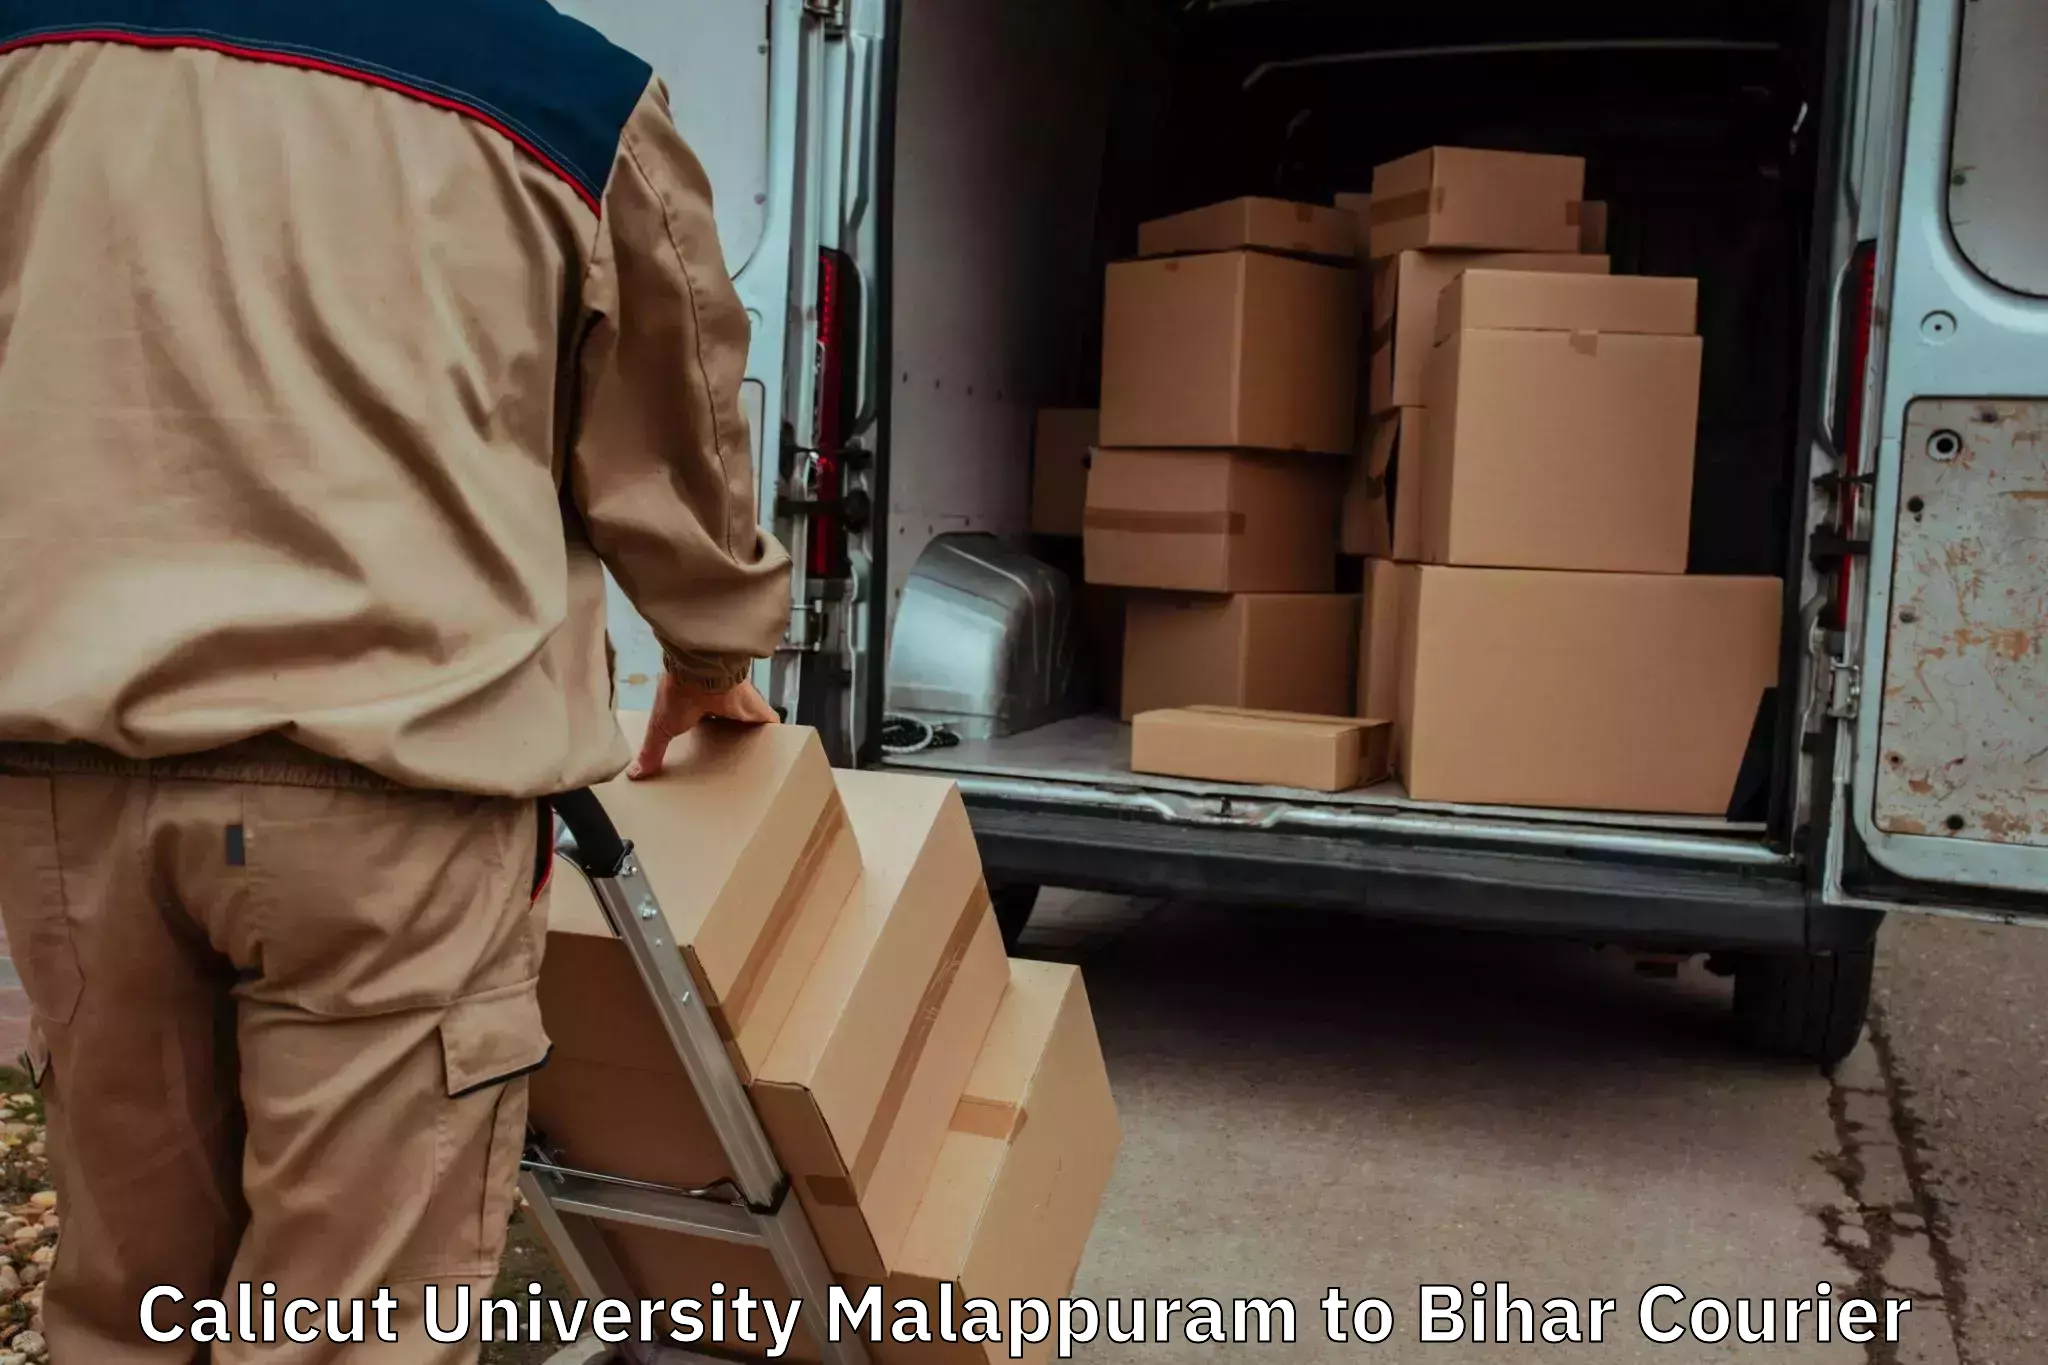 Household moving experts Calicut University Malappuram to Sugauli